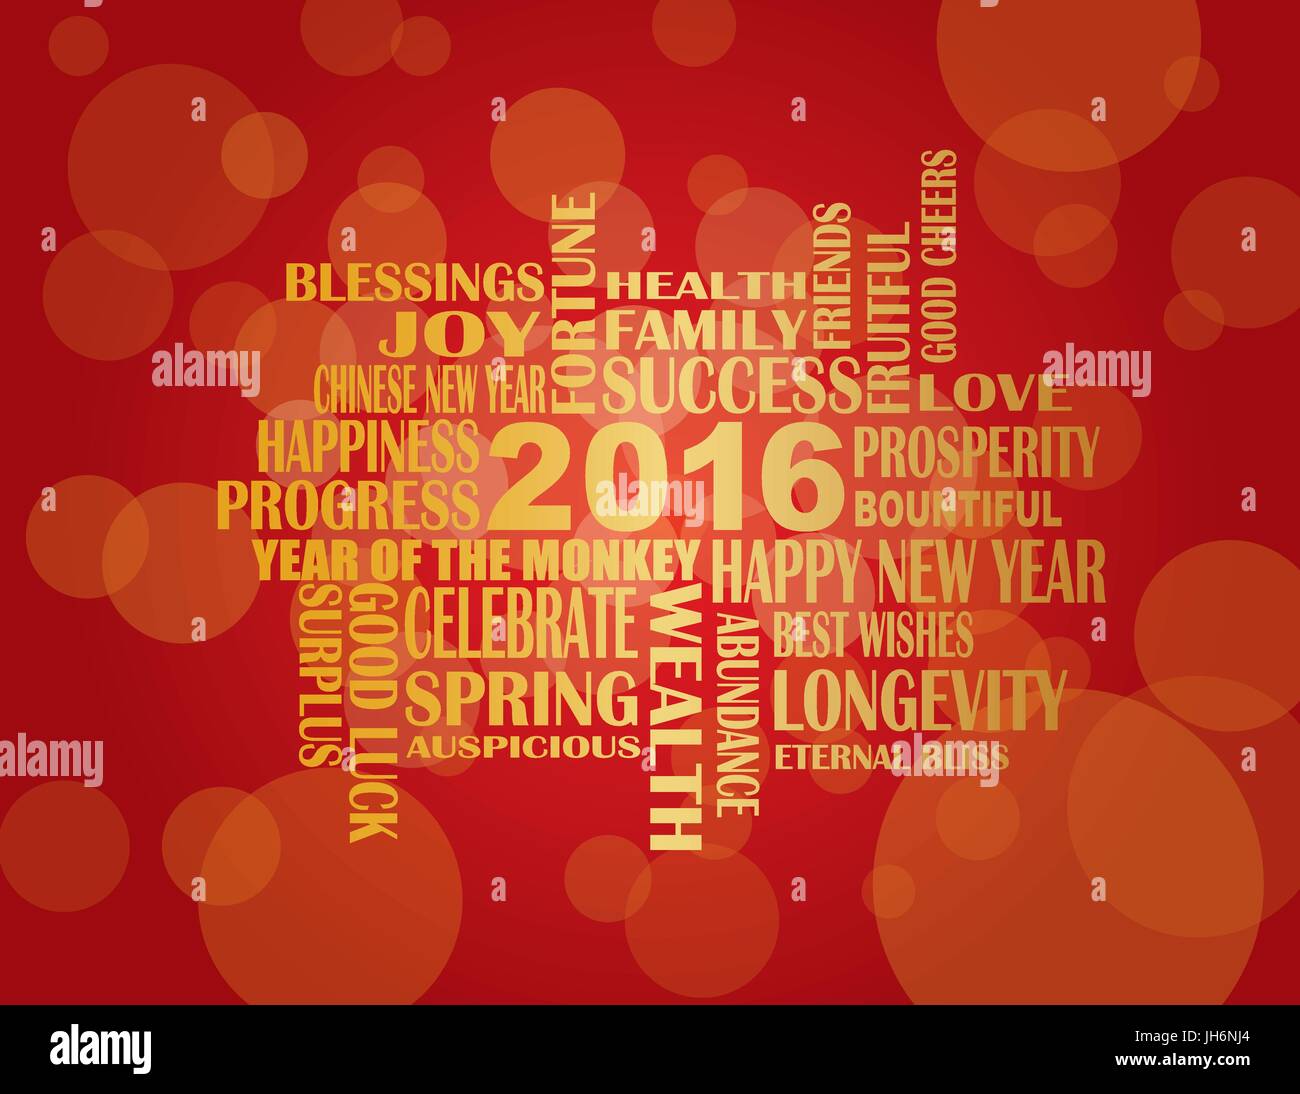 2016 Chinese Lunar New Year Englisch Grüße Text wünschen Gesundheit Glück Wohlstand Glück im Jahr des Affen auf rotem Grund hinsichtlich Stock Vektor